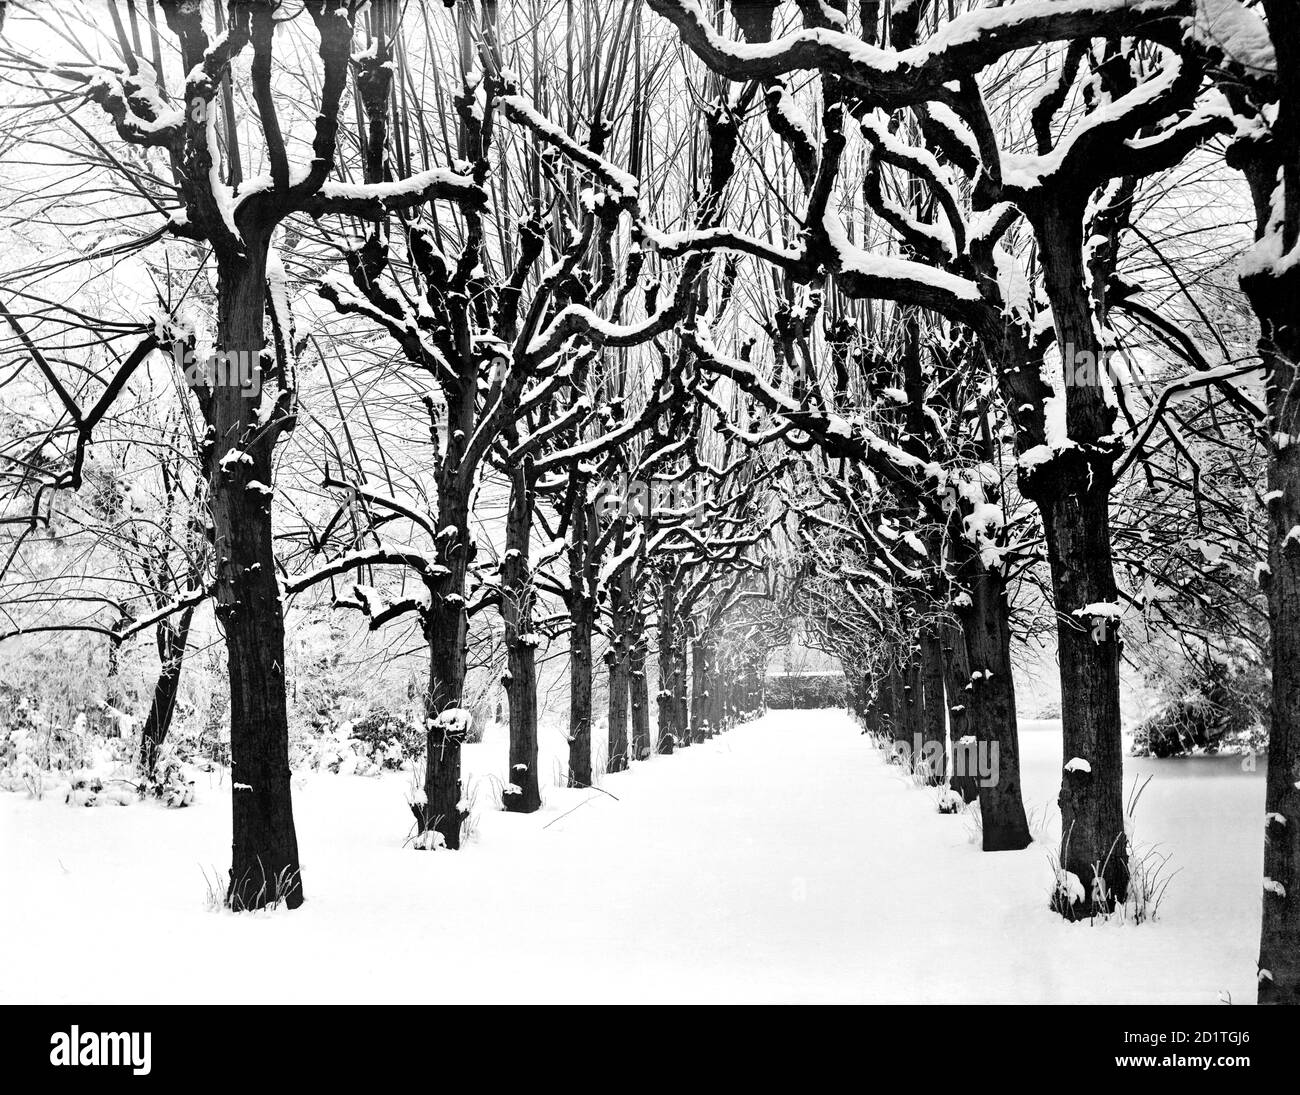 TRINITY COLLEGE, Oxford, Oxfordshire. Vue sur la Lime Walk dans le parc de l'université sous une épaisse couche de neige. La promenade date probablement des années 1680 lorsque des parties formelles du jardin ont été mises en place. Photographié par Henry Taunt en 1880. Banque D'Images